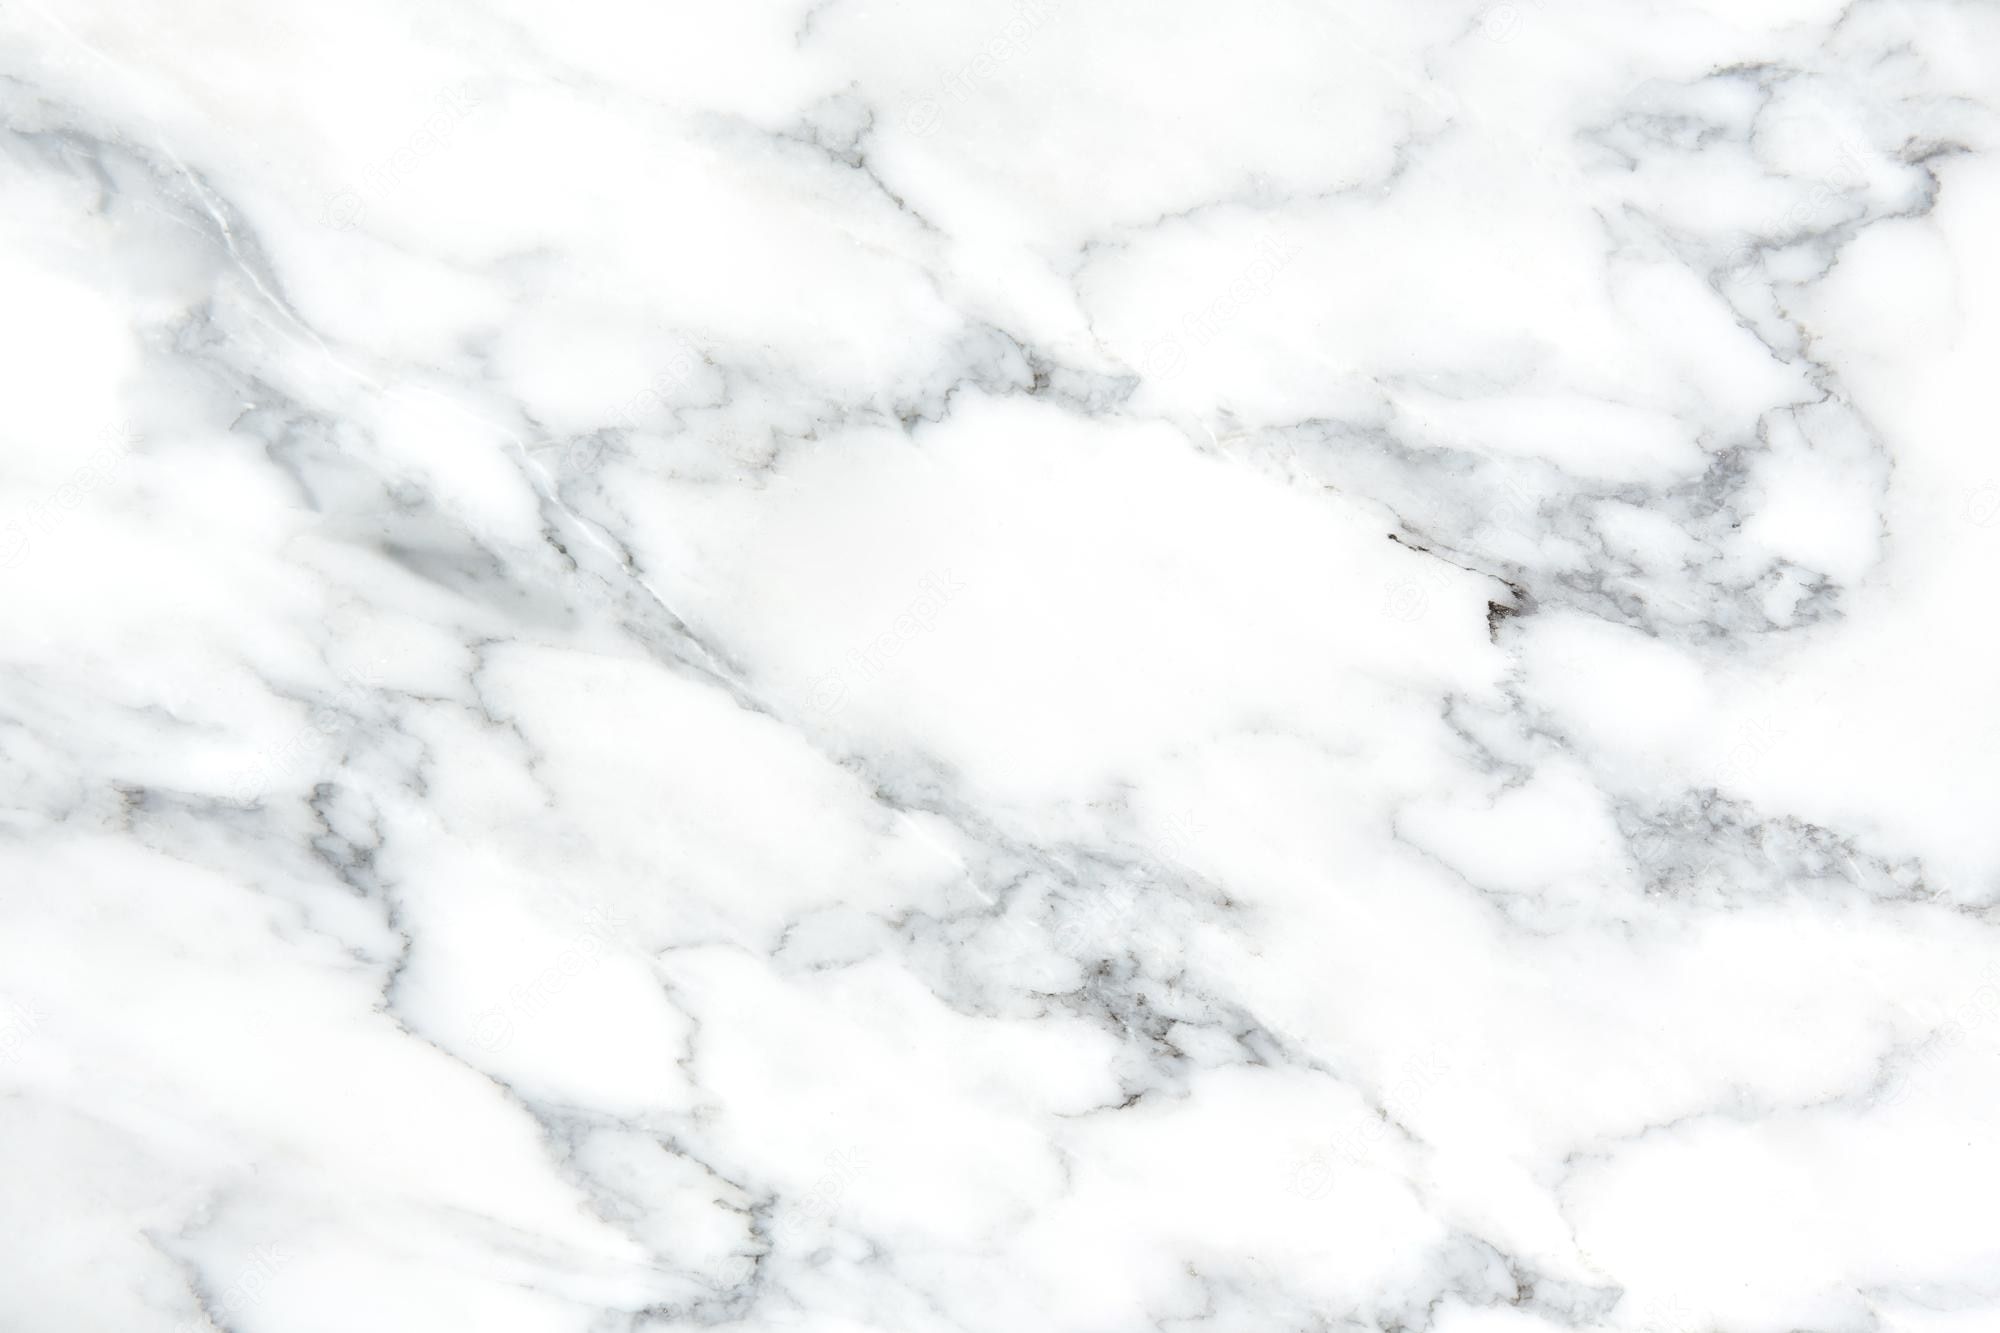 Weiß Hintergrundbild 2000x1333. Natürliche weiße marmorbeschaffenheit für hautkacheltapete luxuriöses hintergrundbild hochauflösendes muster kann hintergrundluxusxa verwendet werden